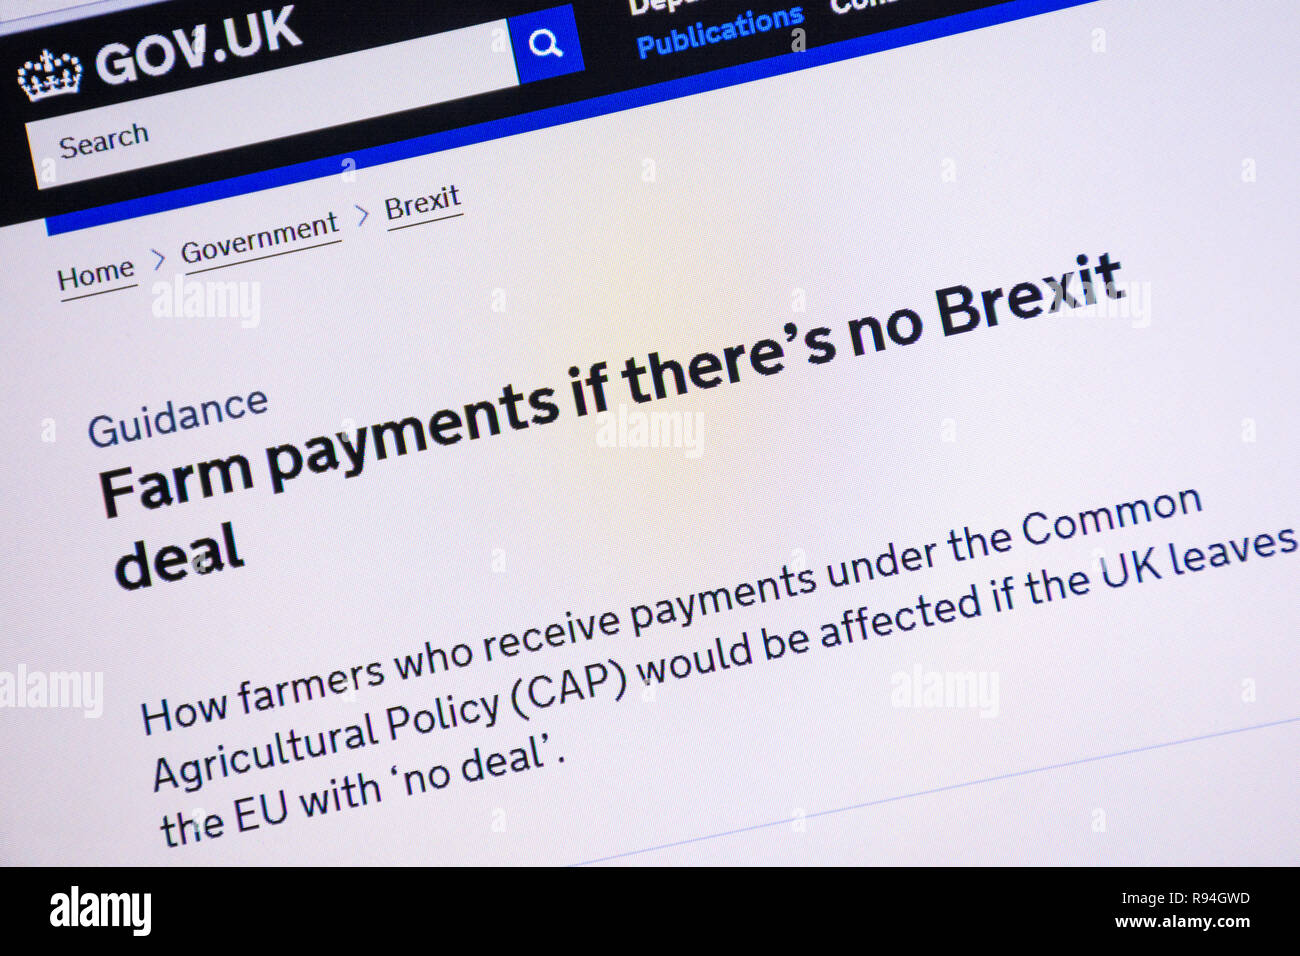 Capture d'écran de l'ordinateur de la gov.uk site montrant des conseils et de l'information sur les paiements agricoles s'il n'y a pas beaucoup Brexit Banque D'Images